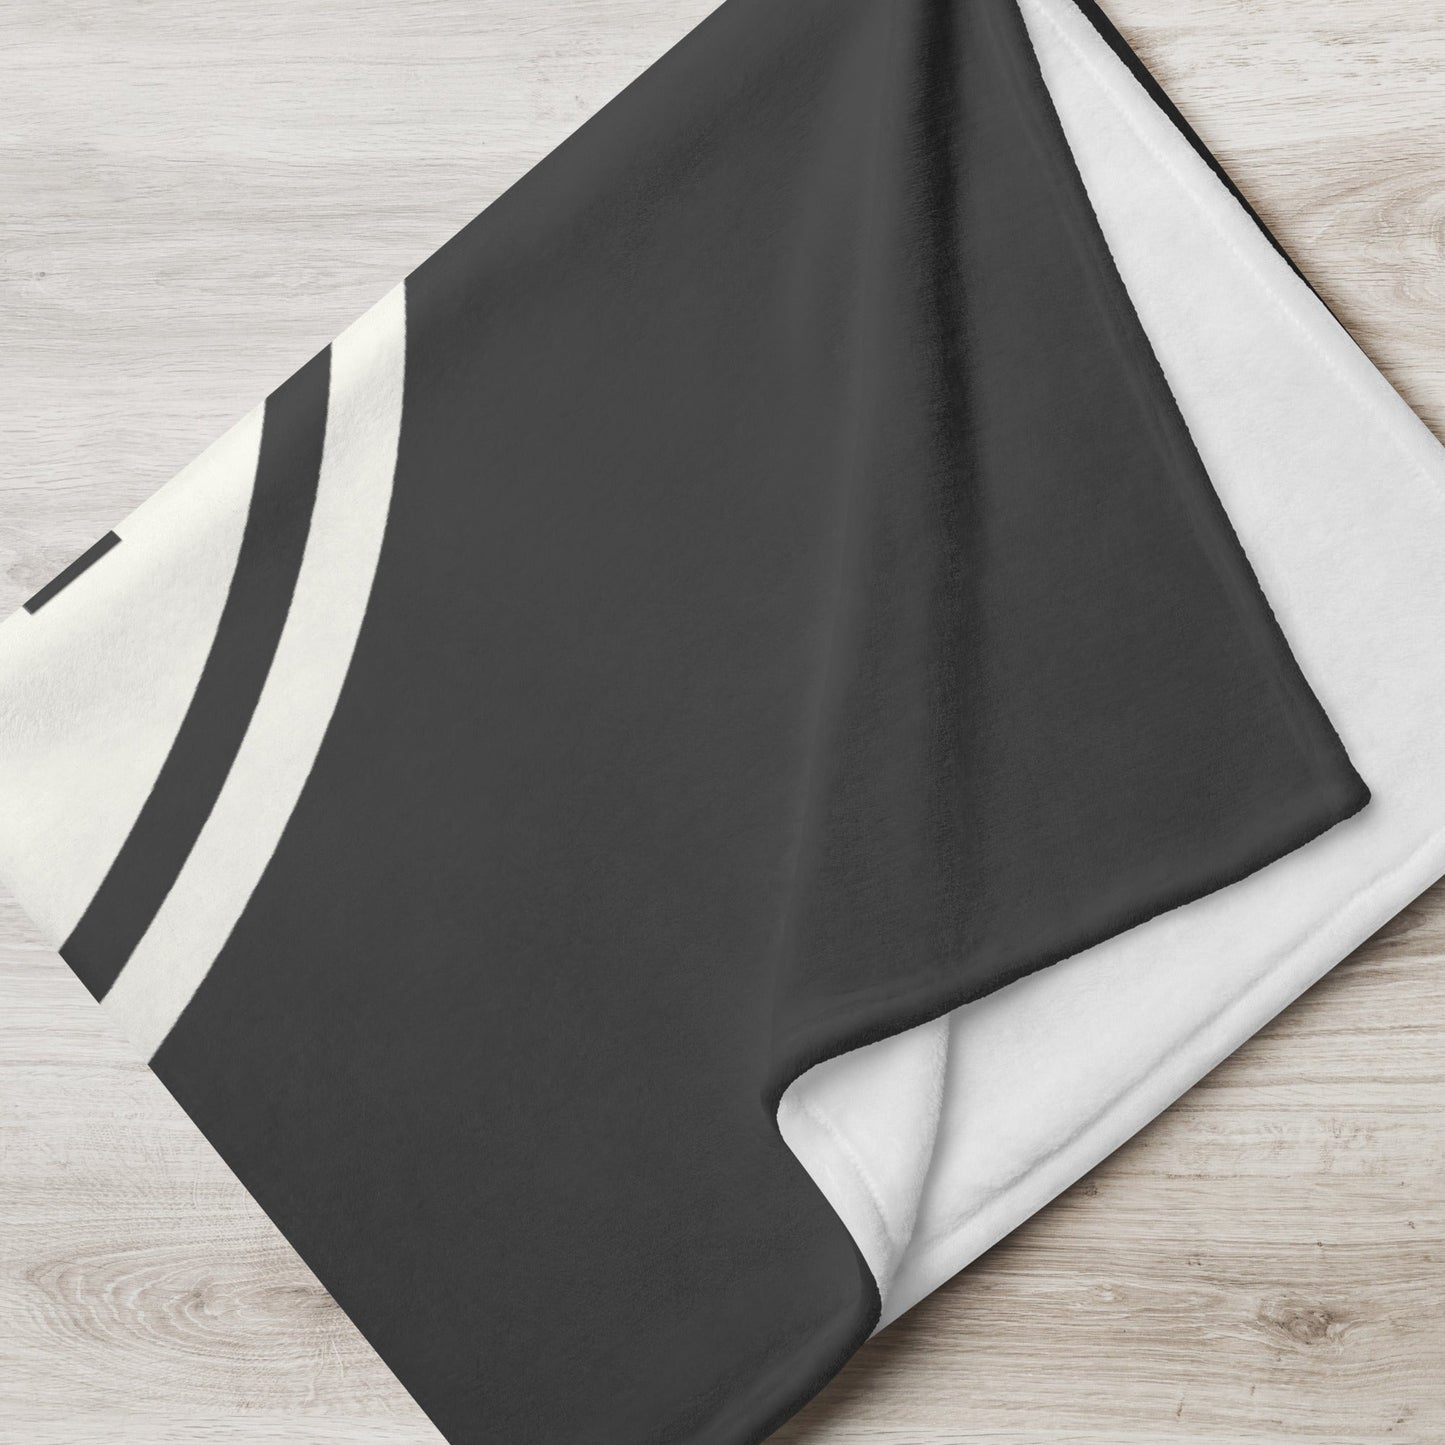 Unique Travel Gift Throw Blanket - White Oval • YOW Ottawa • YHM Designs - Image 05